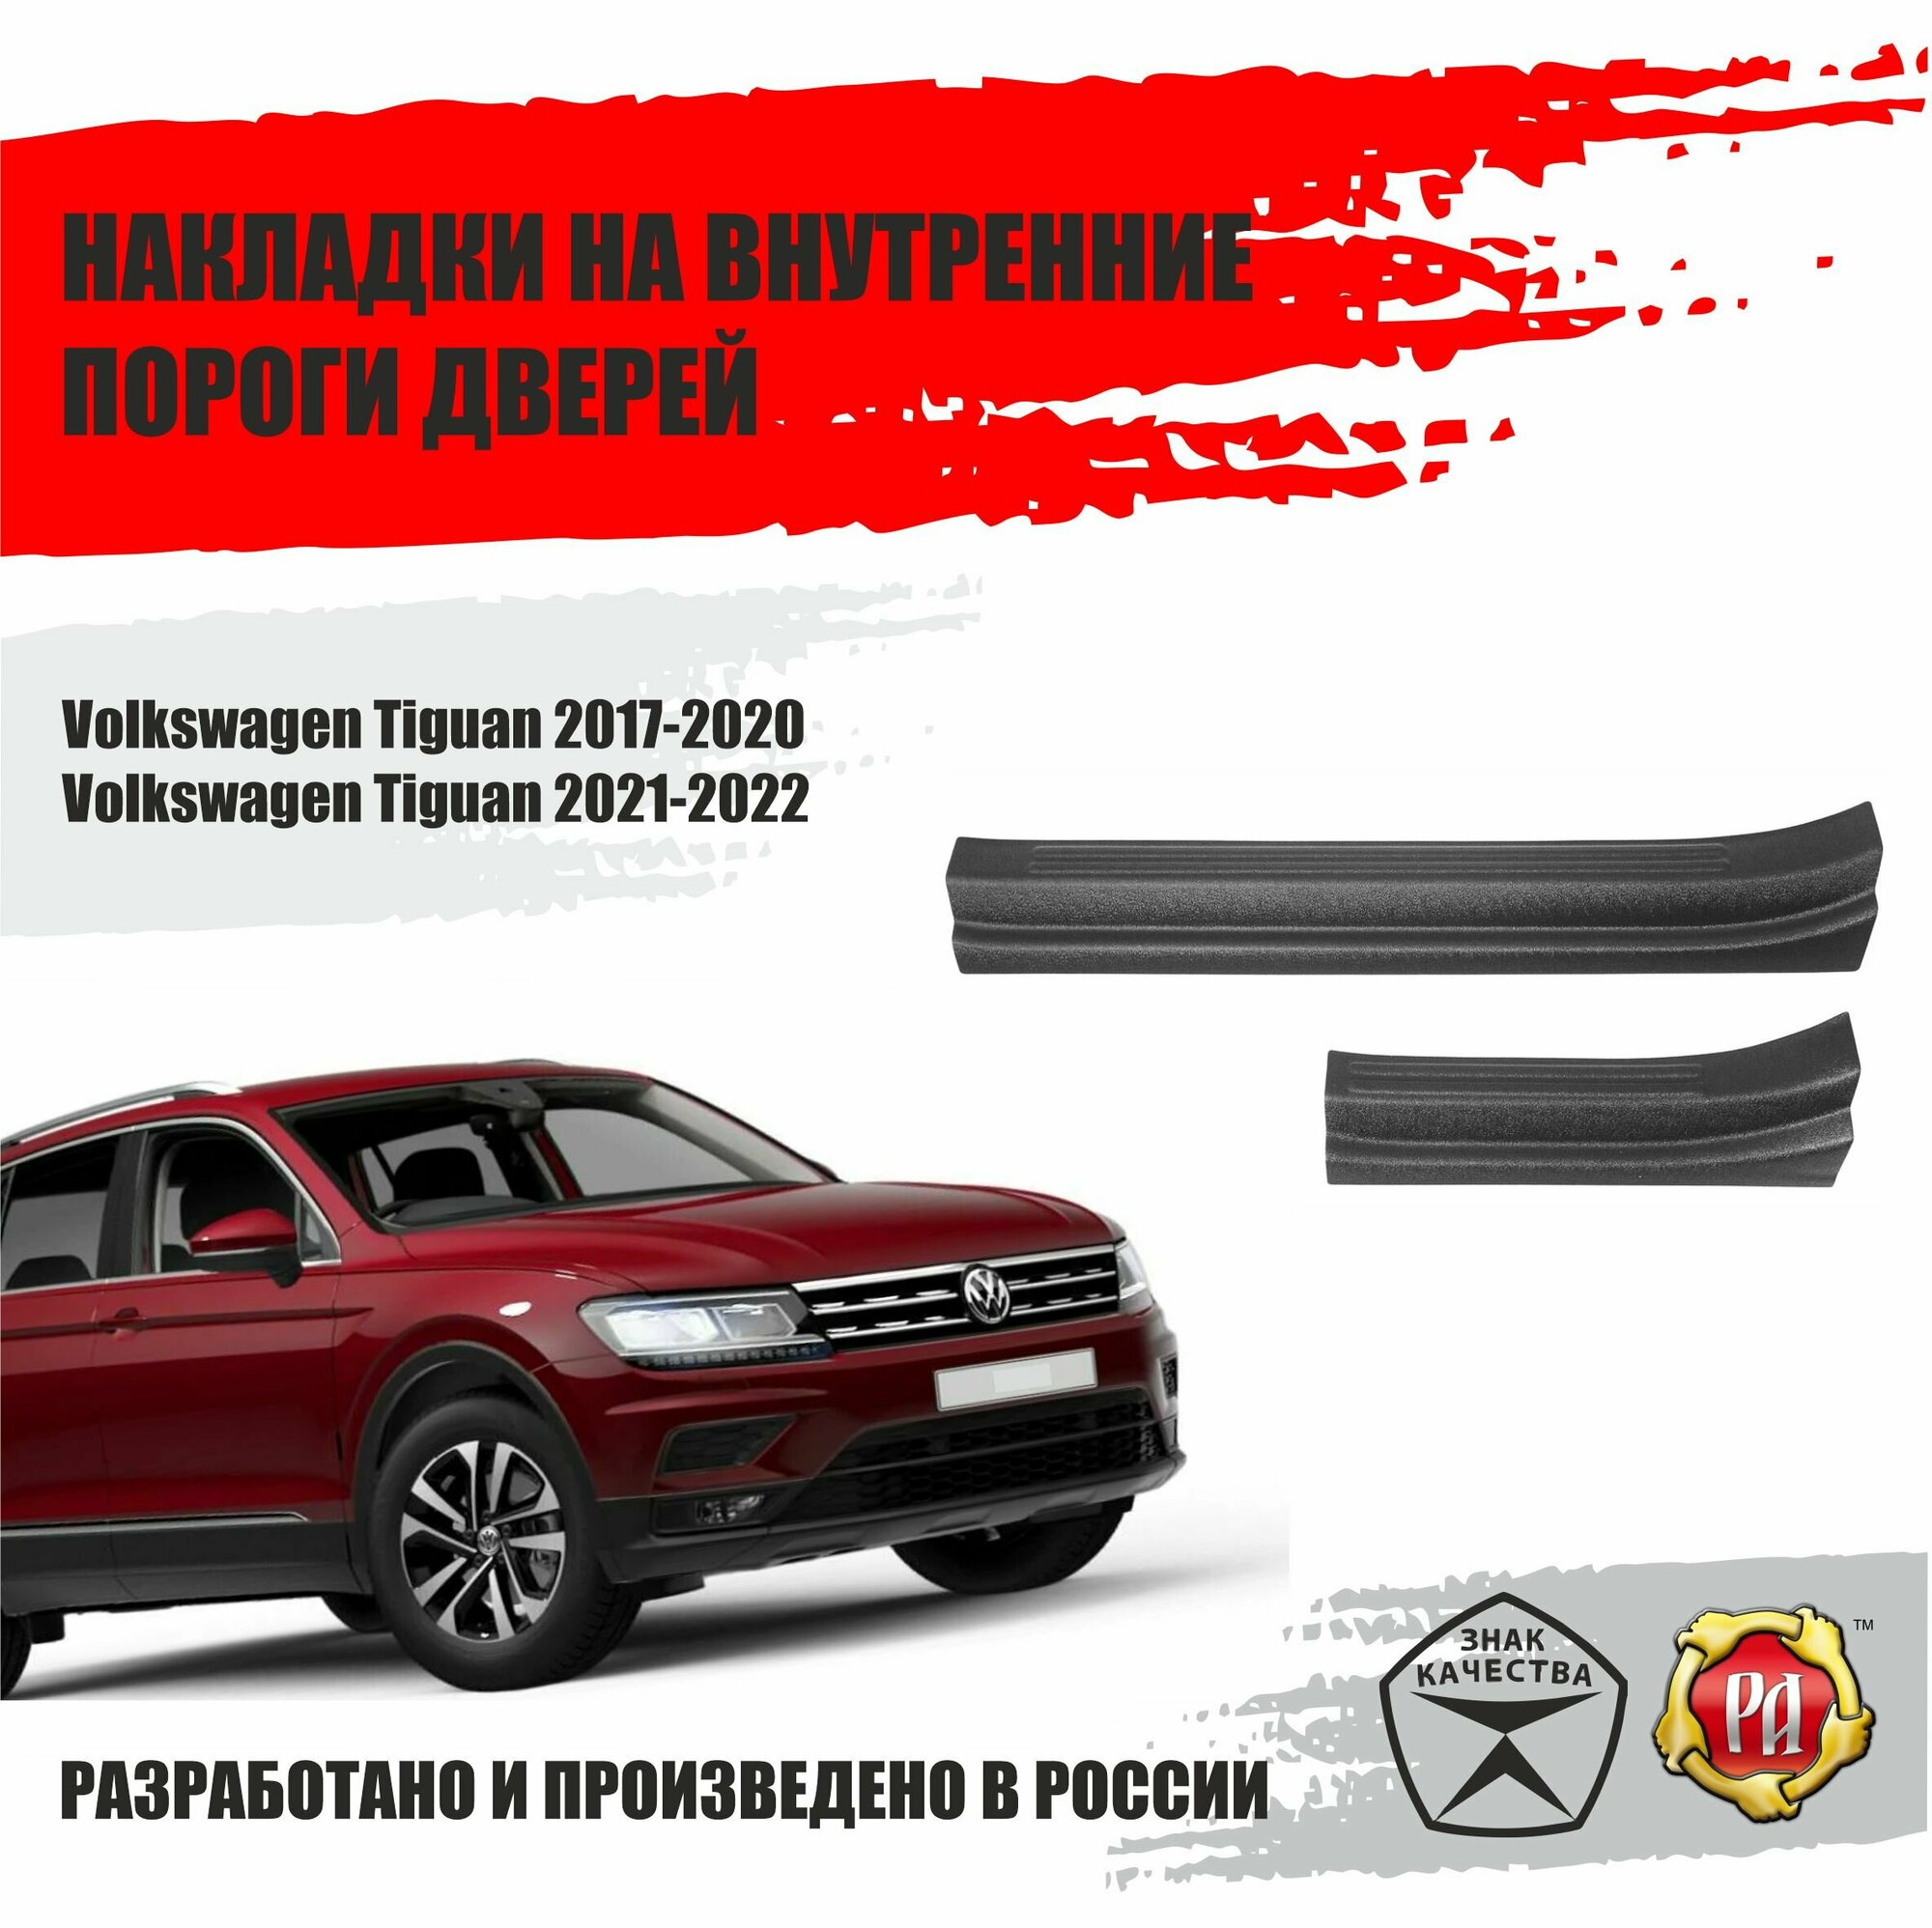 Накладки на пороги дверей Русская Артель для автомобиля Volkswagen Tiguan / Фольксваген Тигуан 2017 2018 2019 2020 2021 2022